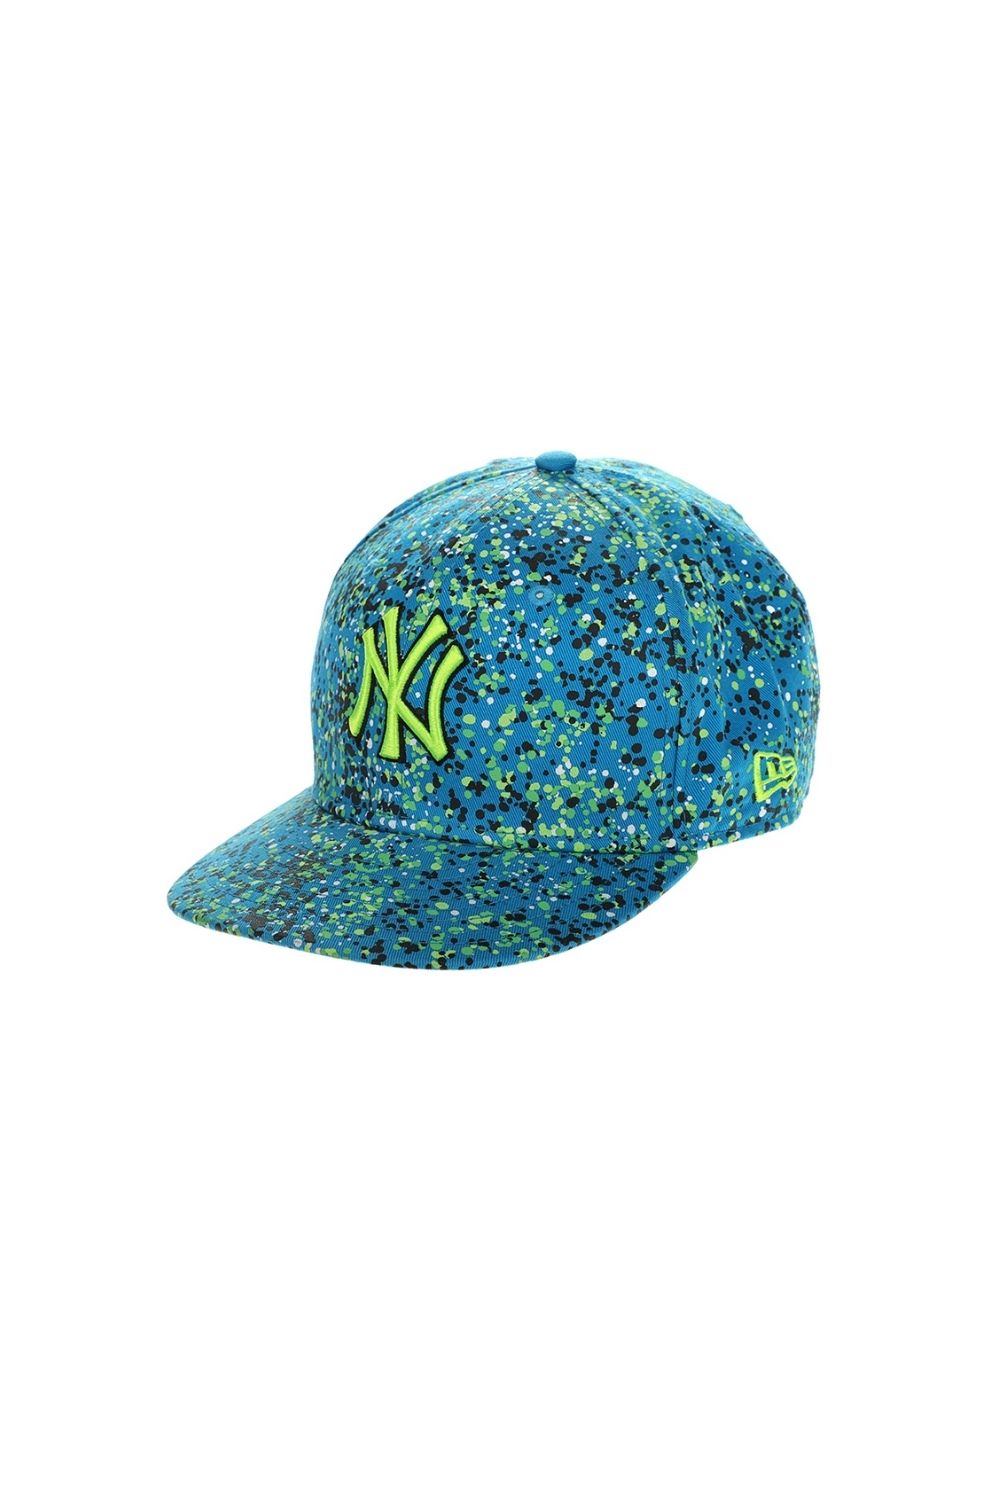 Ανδρικά/Αξεσουάρ/Καπέλα/Αθλητικά NEW ERA - Unisex καπέλο NEW ERA DENSPECKLE μπλε κίτρινο